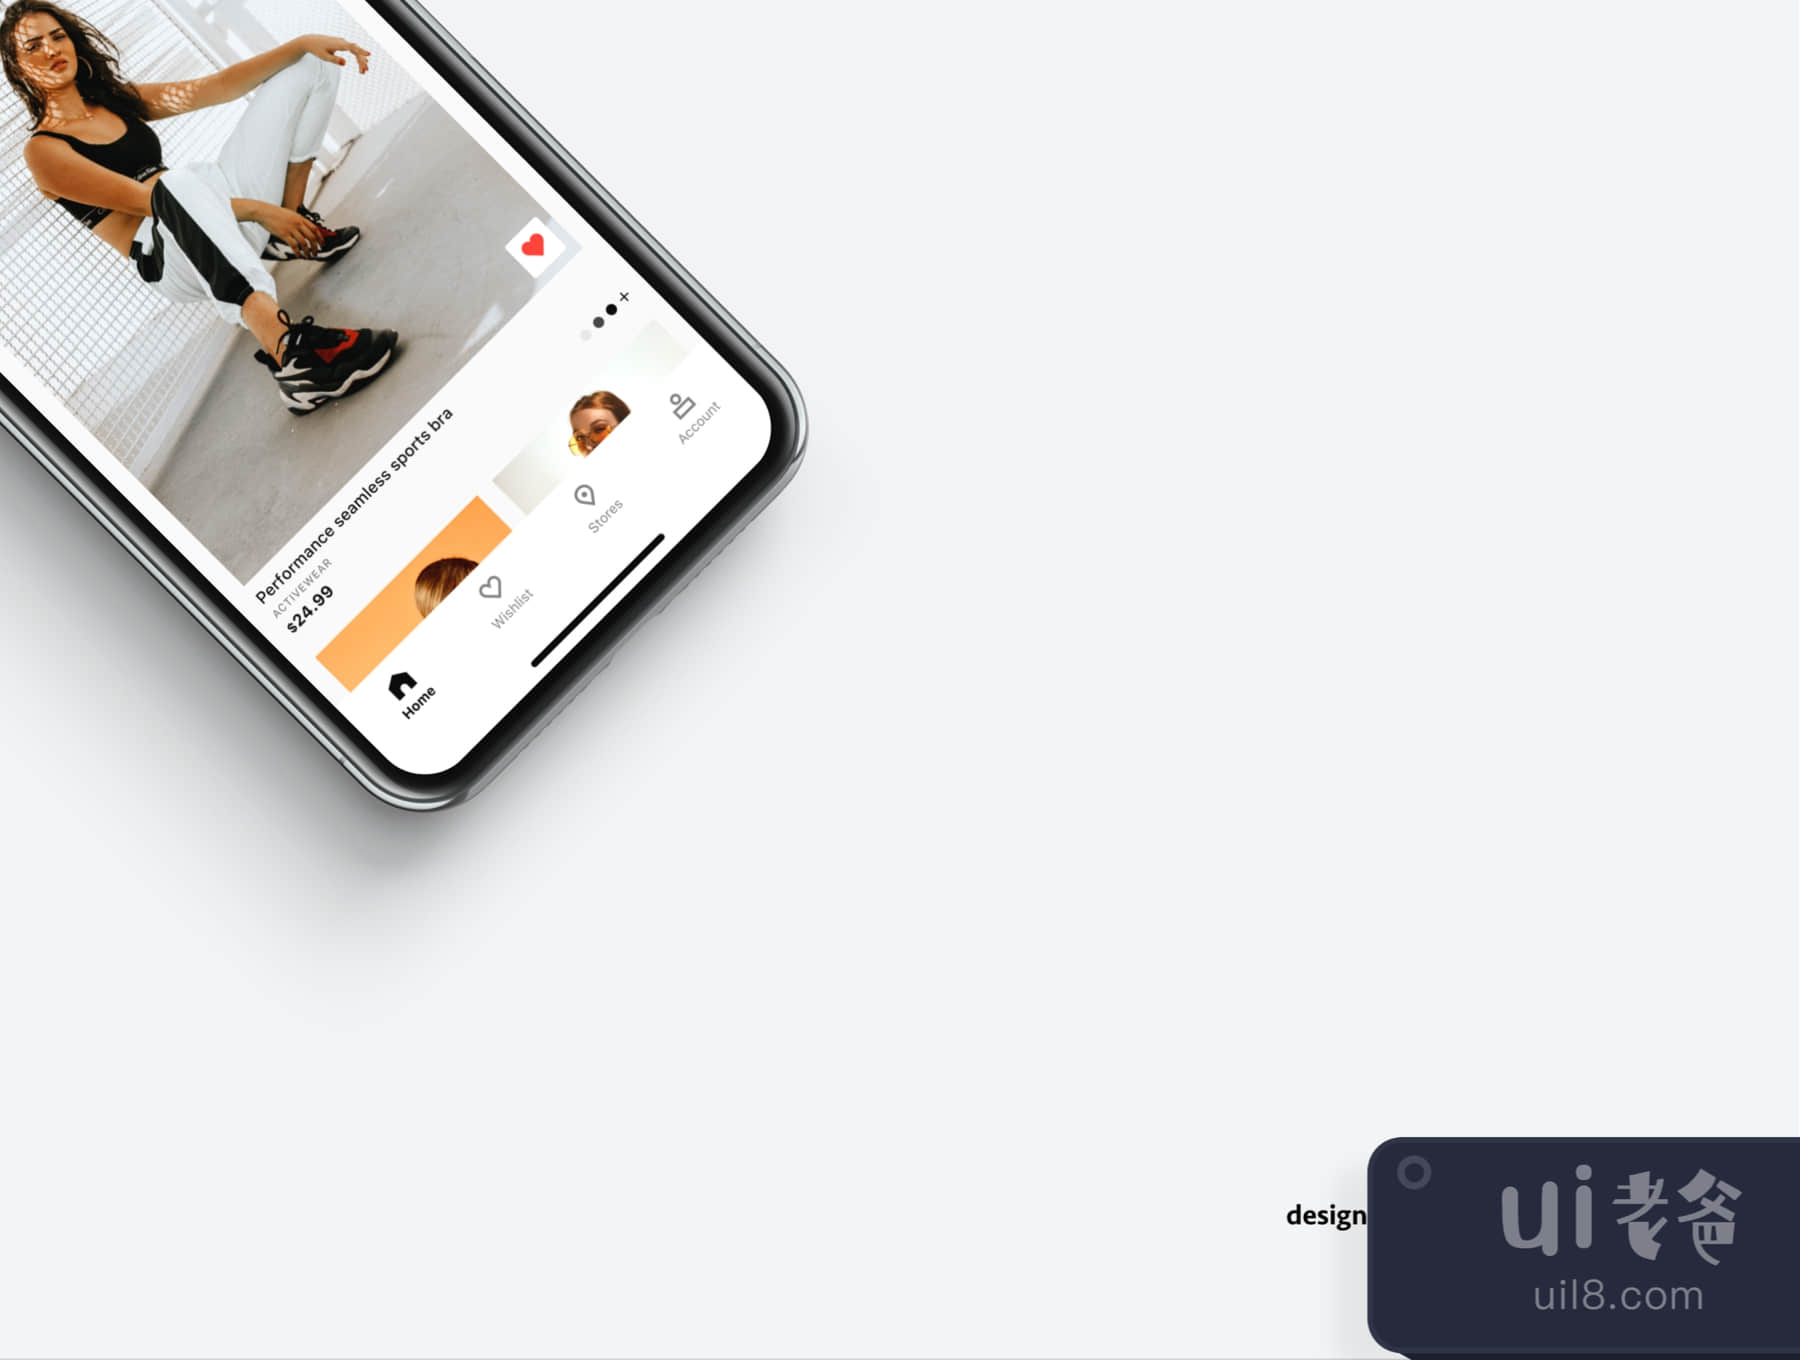 潮流的电子商务App UI工具包 (Trendy E-commerce App UI kit)插图4